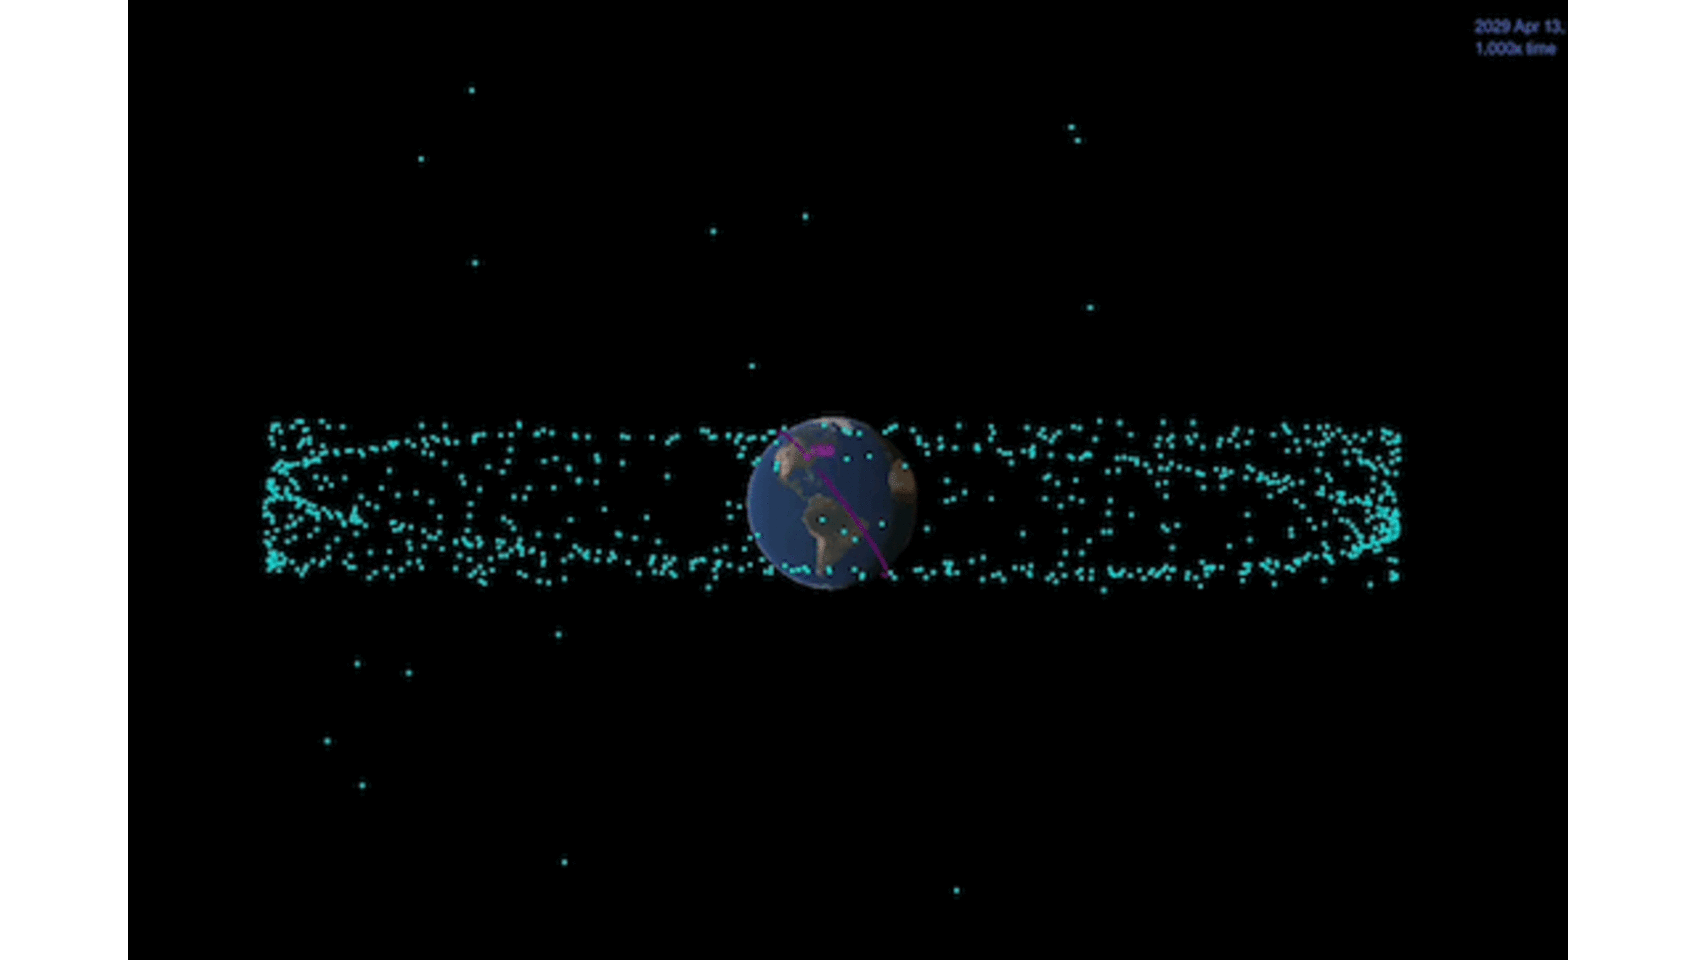  Geltonai pažymėtas Apophis 2029 metais praskries tokiu atstumu, kokiu skrieja kai kurie palydovai (pažymėti mėlynai). <br> Space.com iliustr.